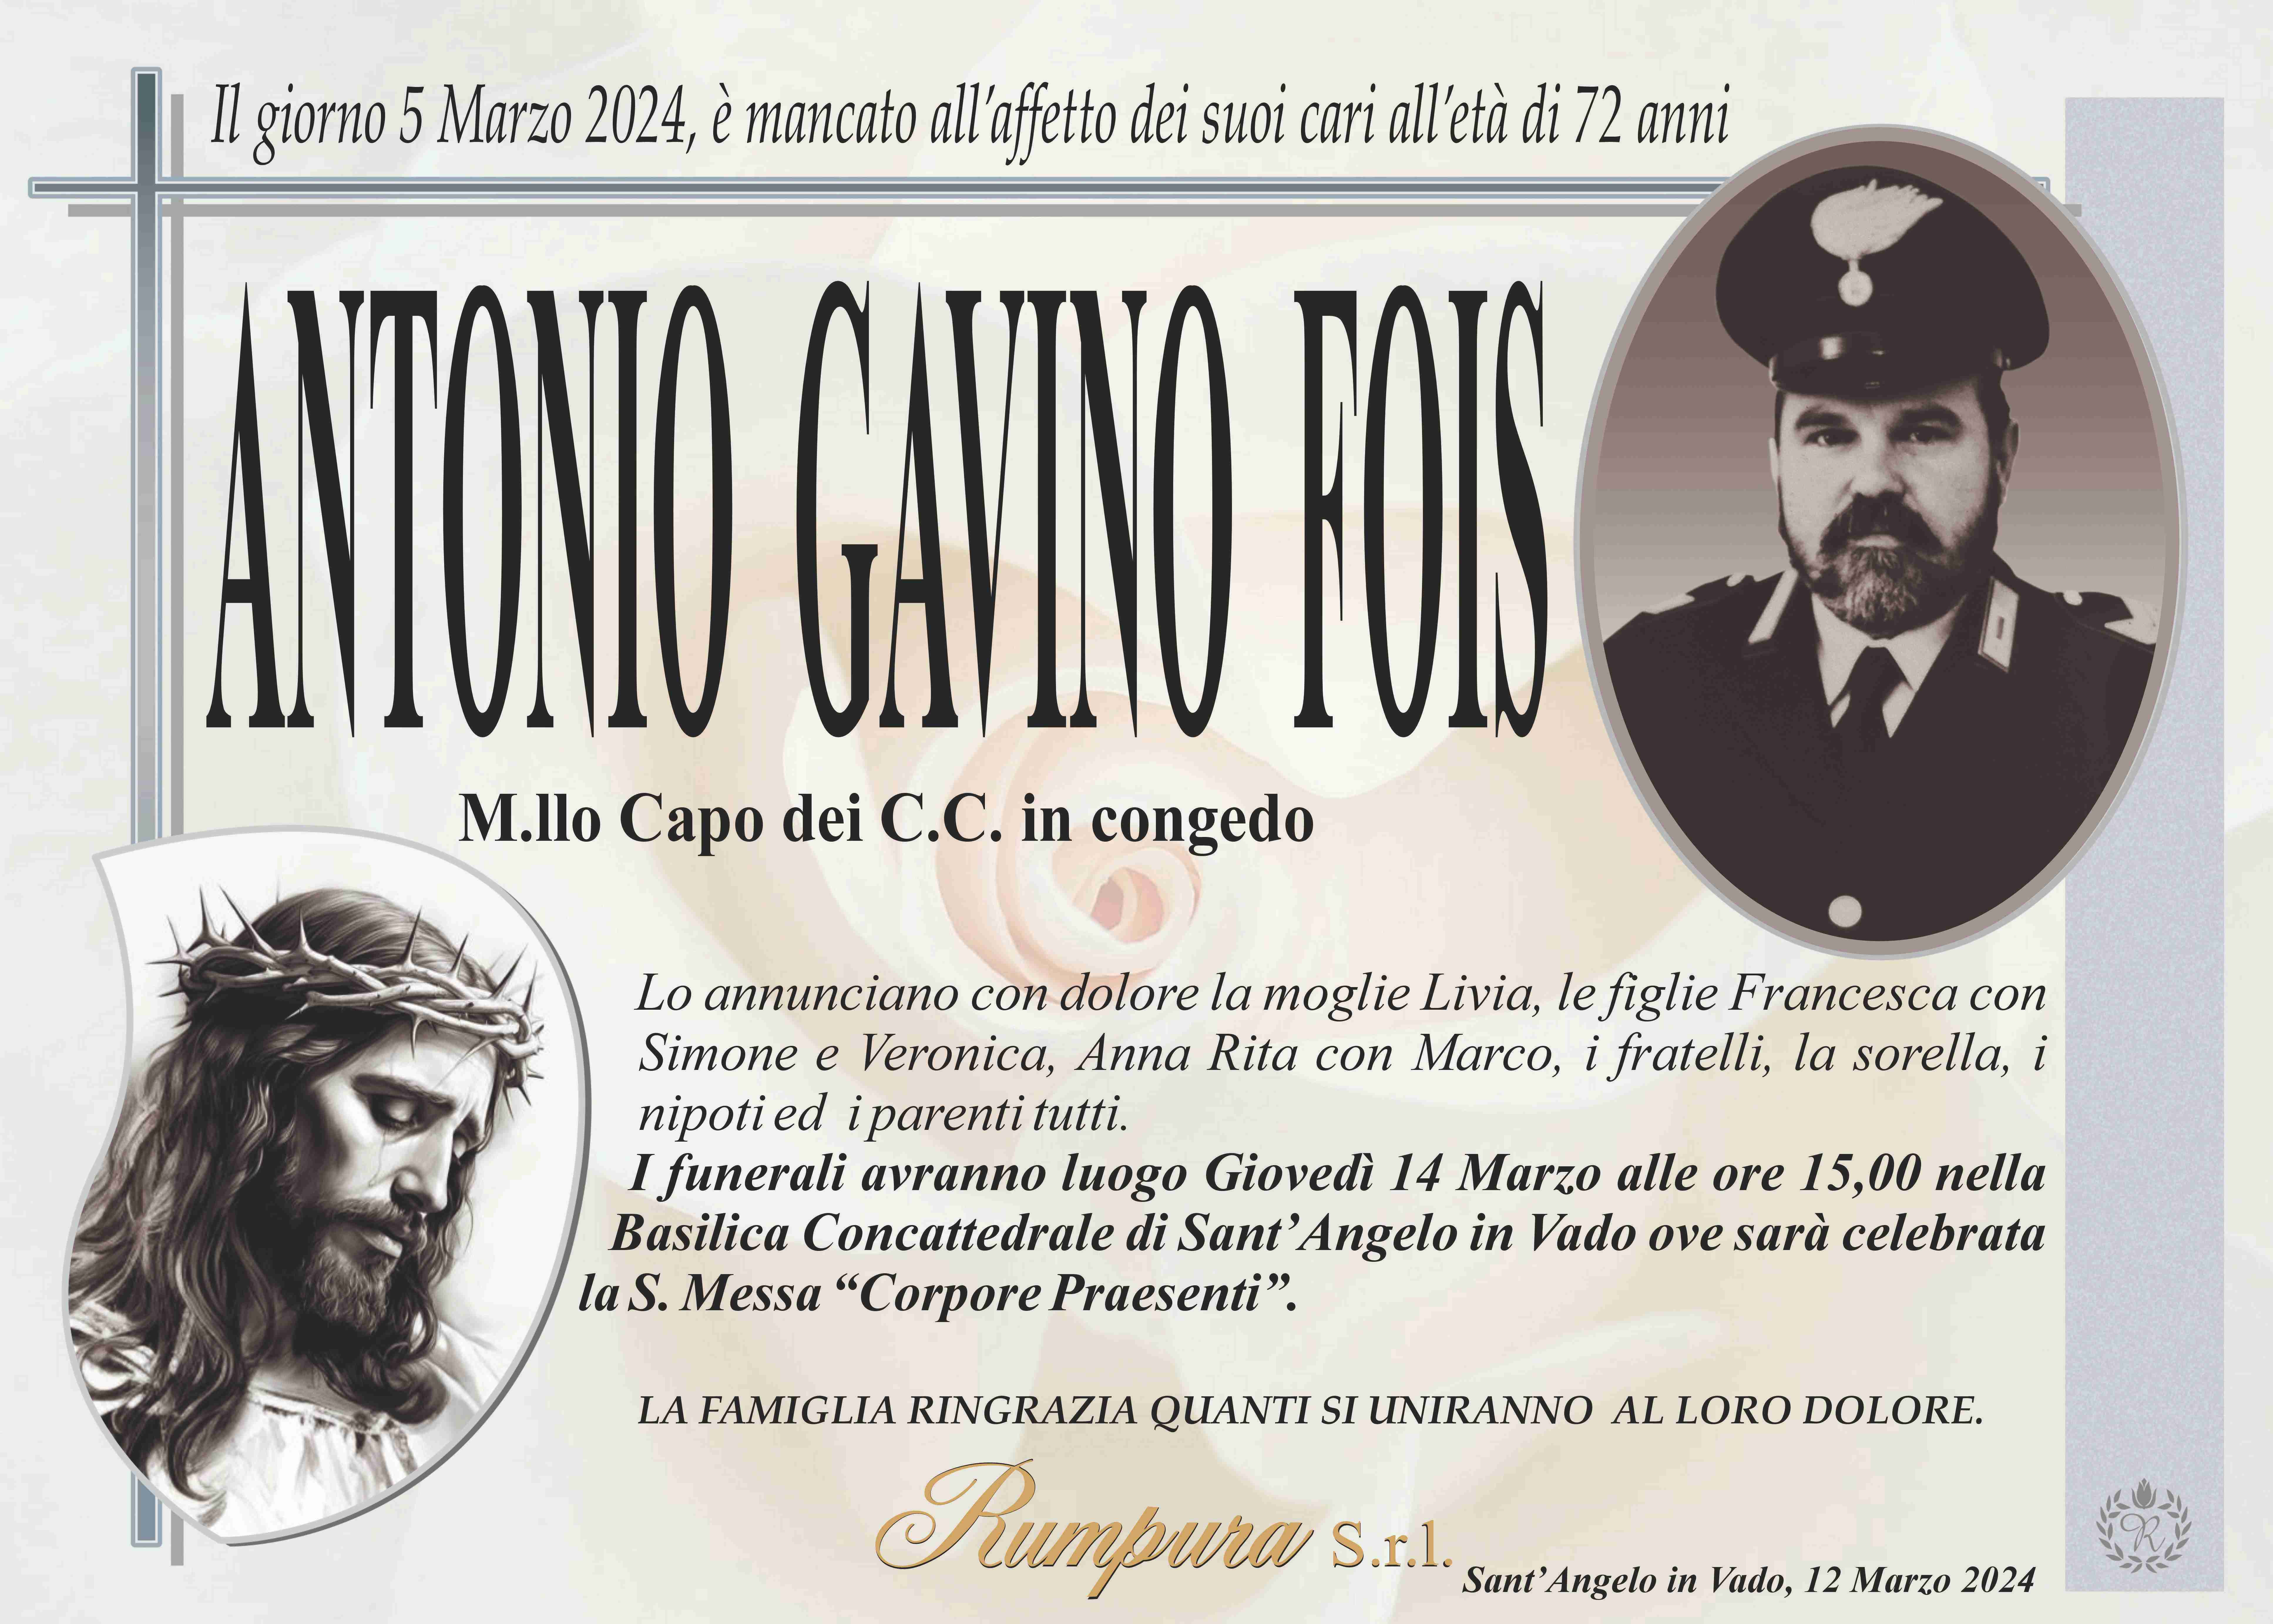 Antonio Gavino Fois